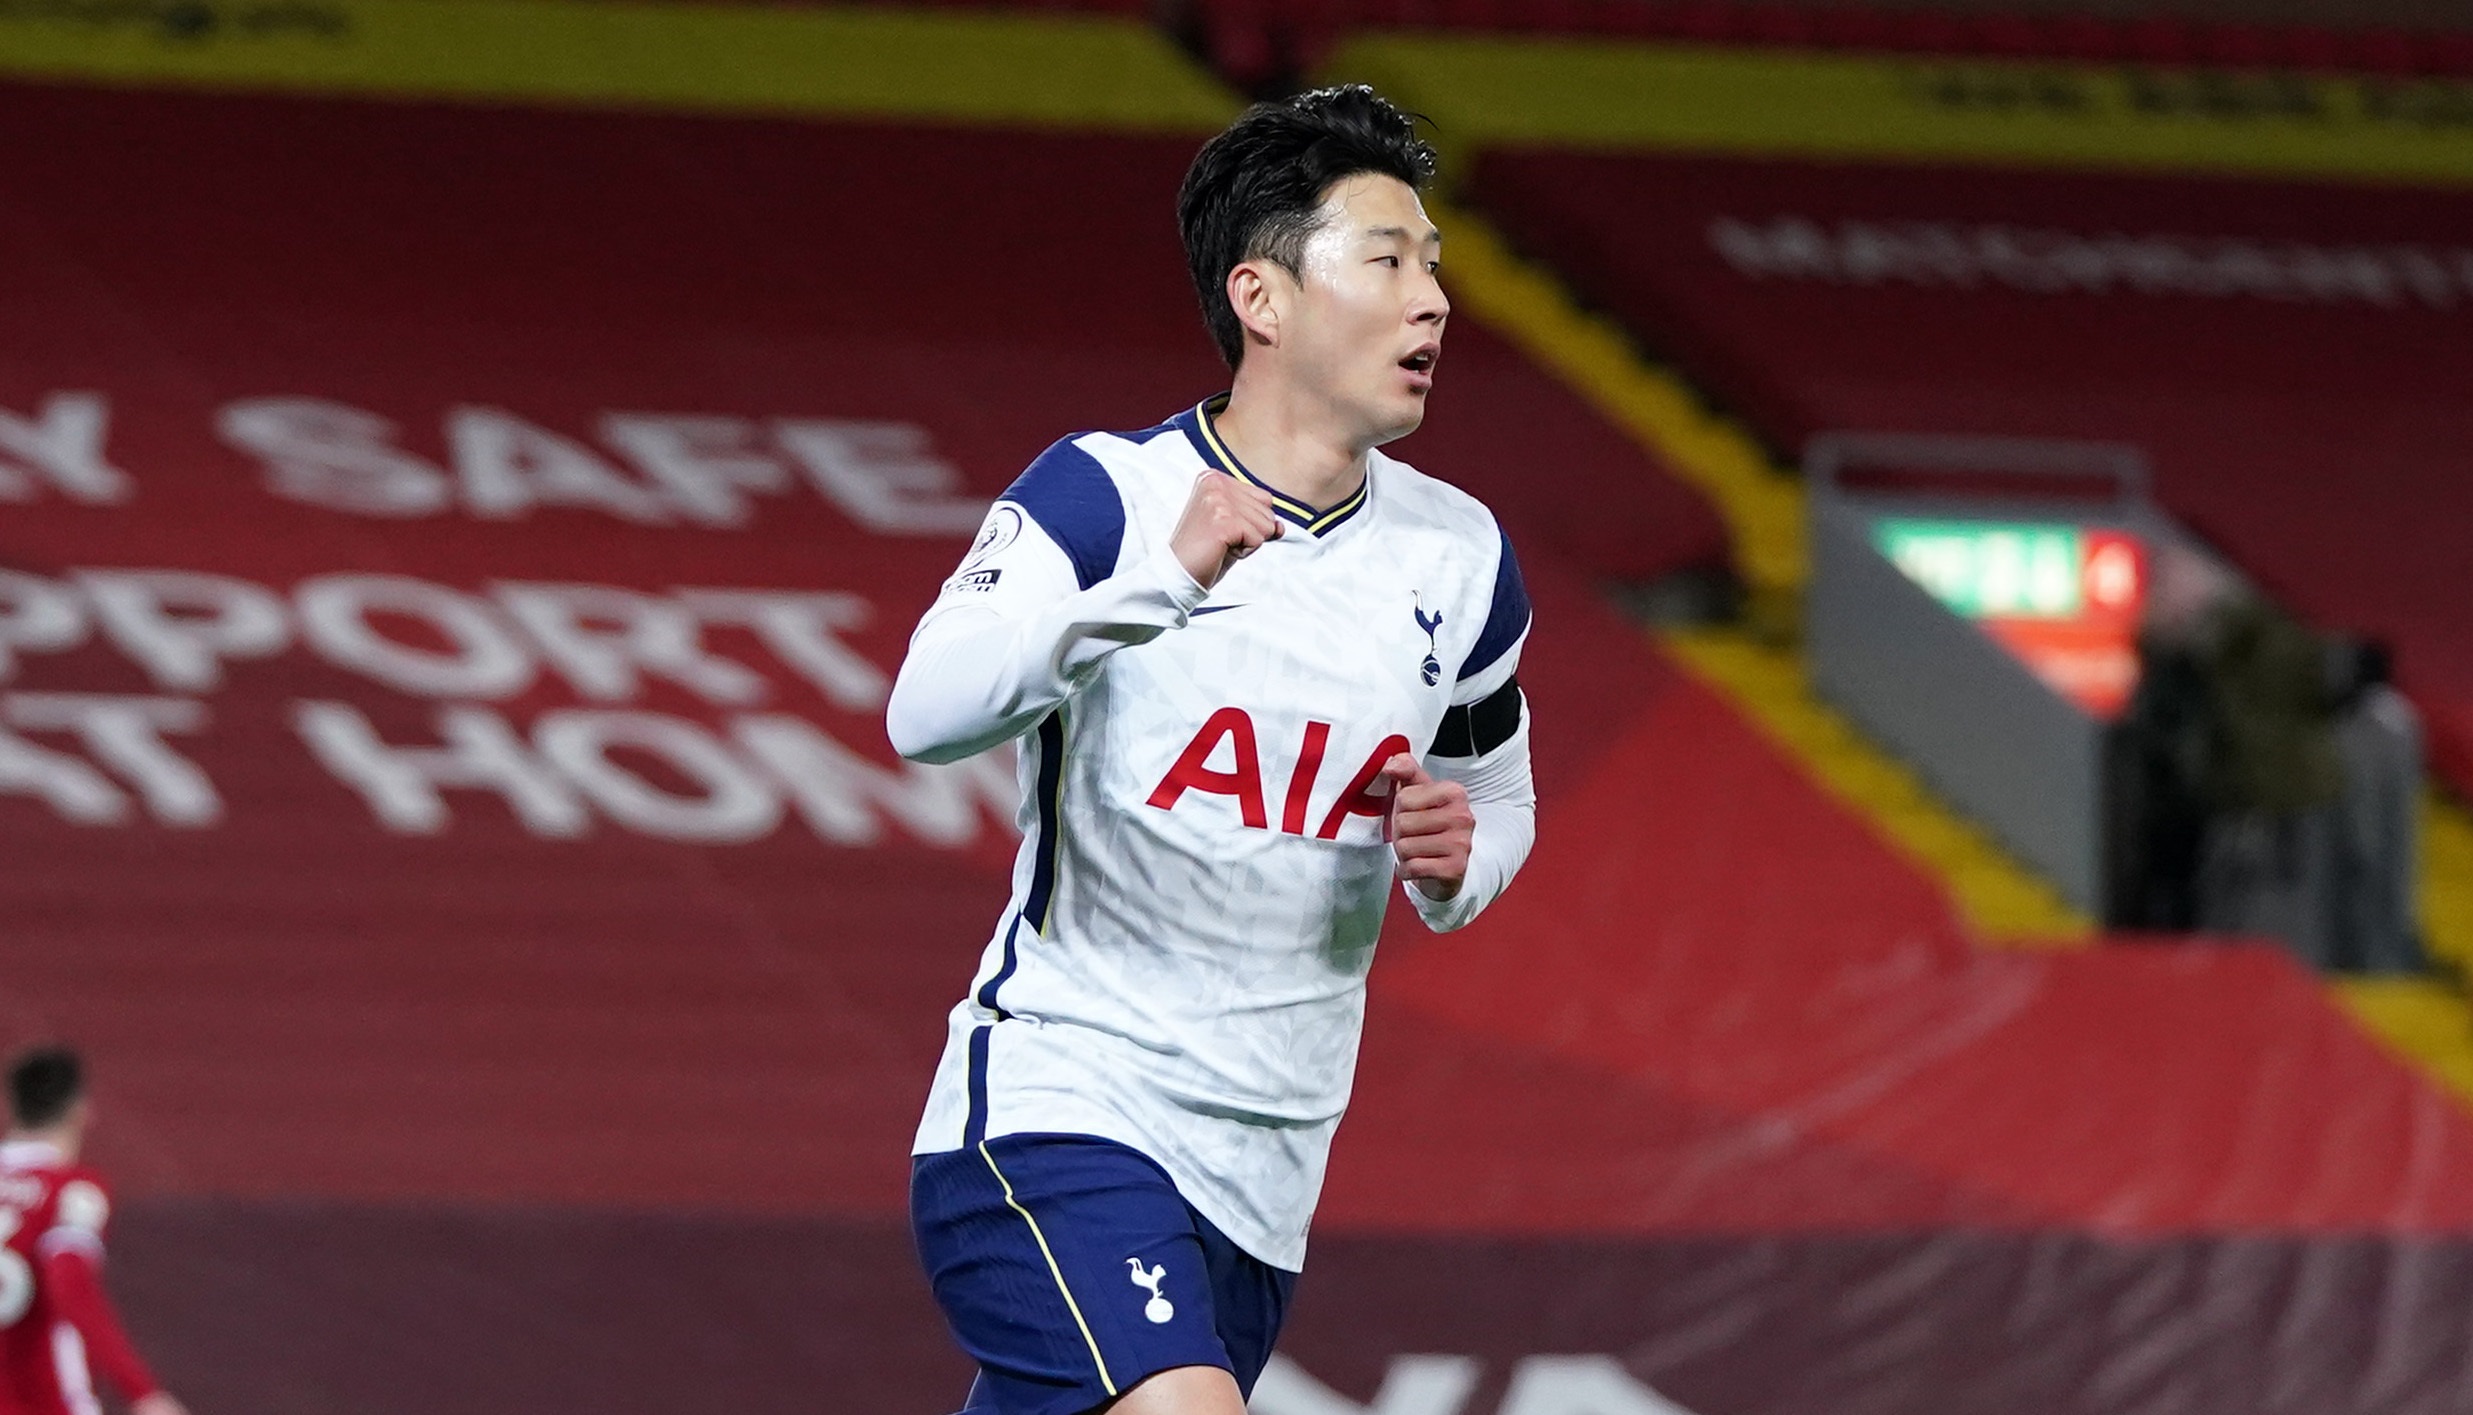 Spurs akan mengandalkan Son Heung-min untuk membobol gawang Leicester. (Foto: Twitter/@SpursOfficial)